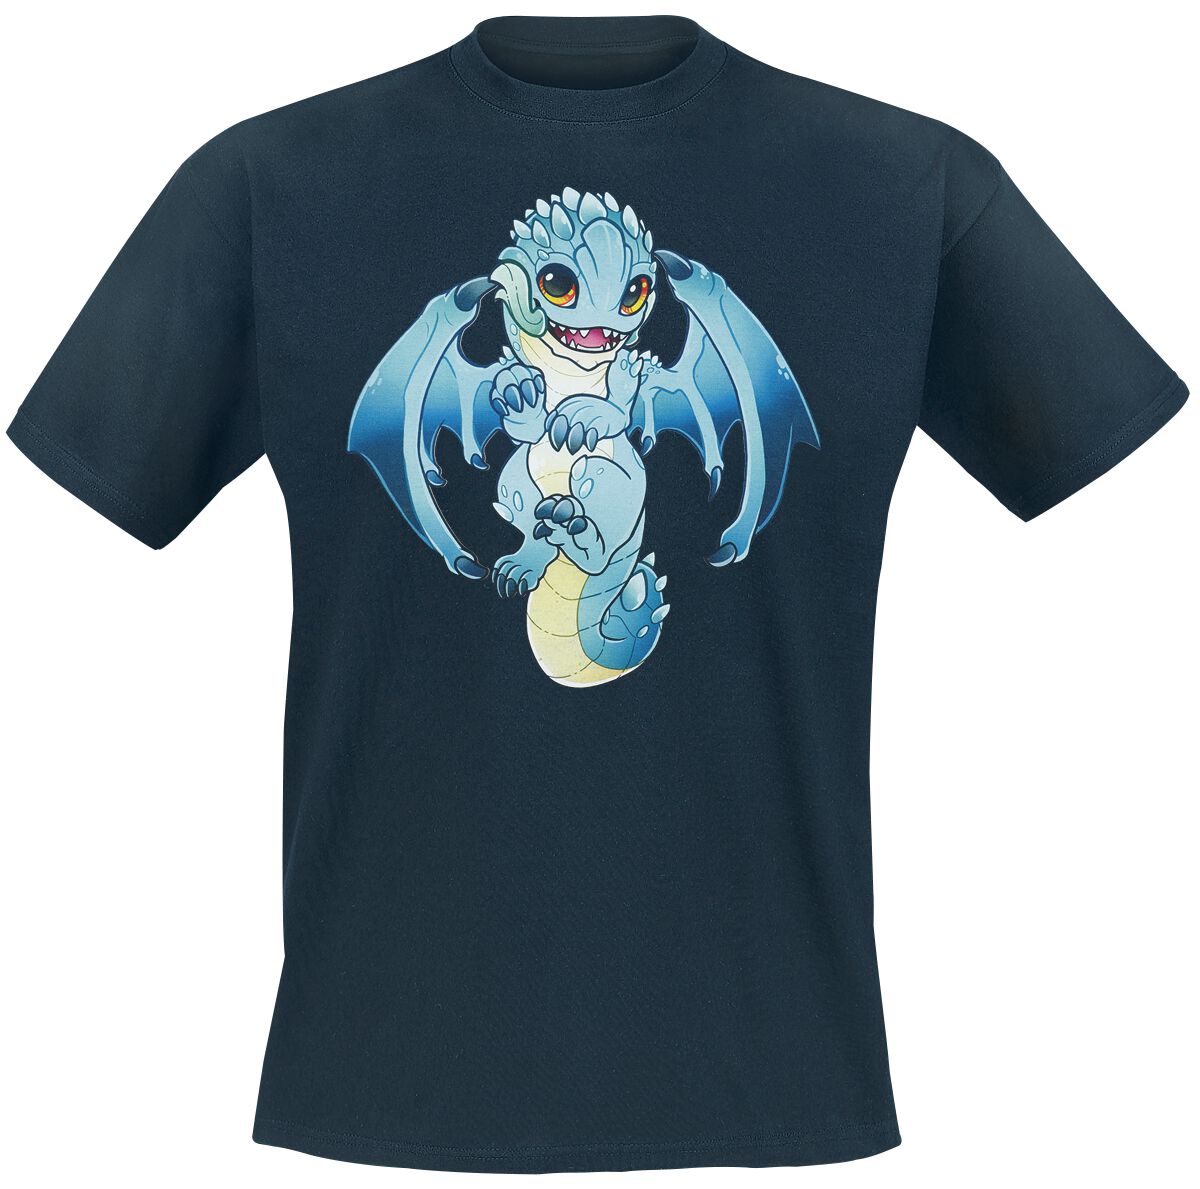 Guild Wars - Gaming T-Shirt - Baby Aurene by RinTheYordle - S bis XL - für Männer - Größe XL - dunkelblau  - EMP exklusives Merchandise!